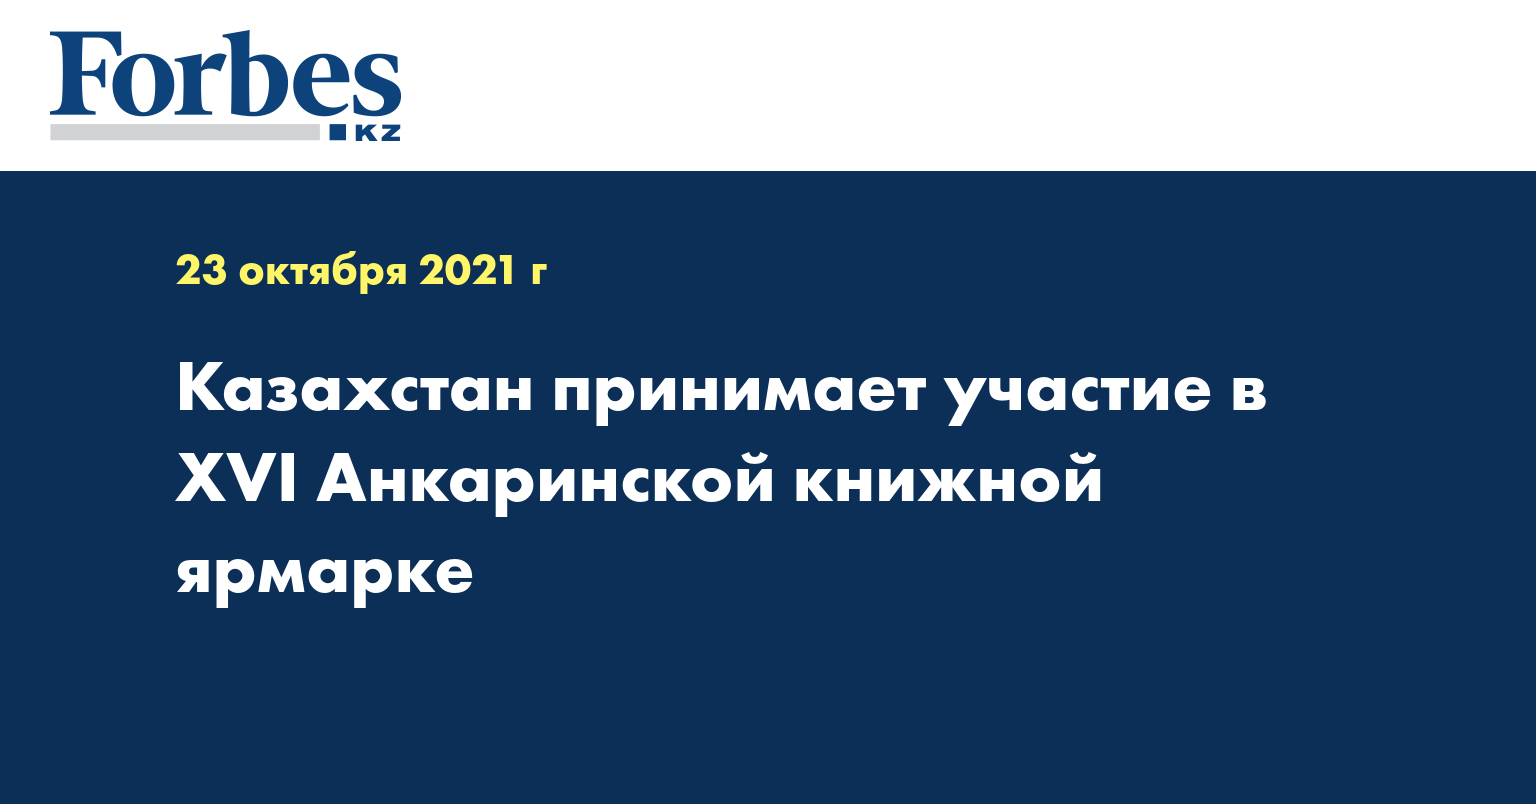 Казахстан принимает участие в XVI Aнкаринской книжной ярмарке